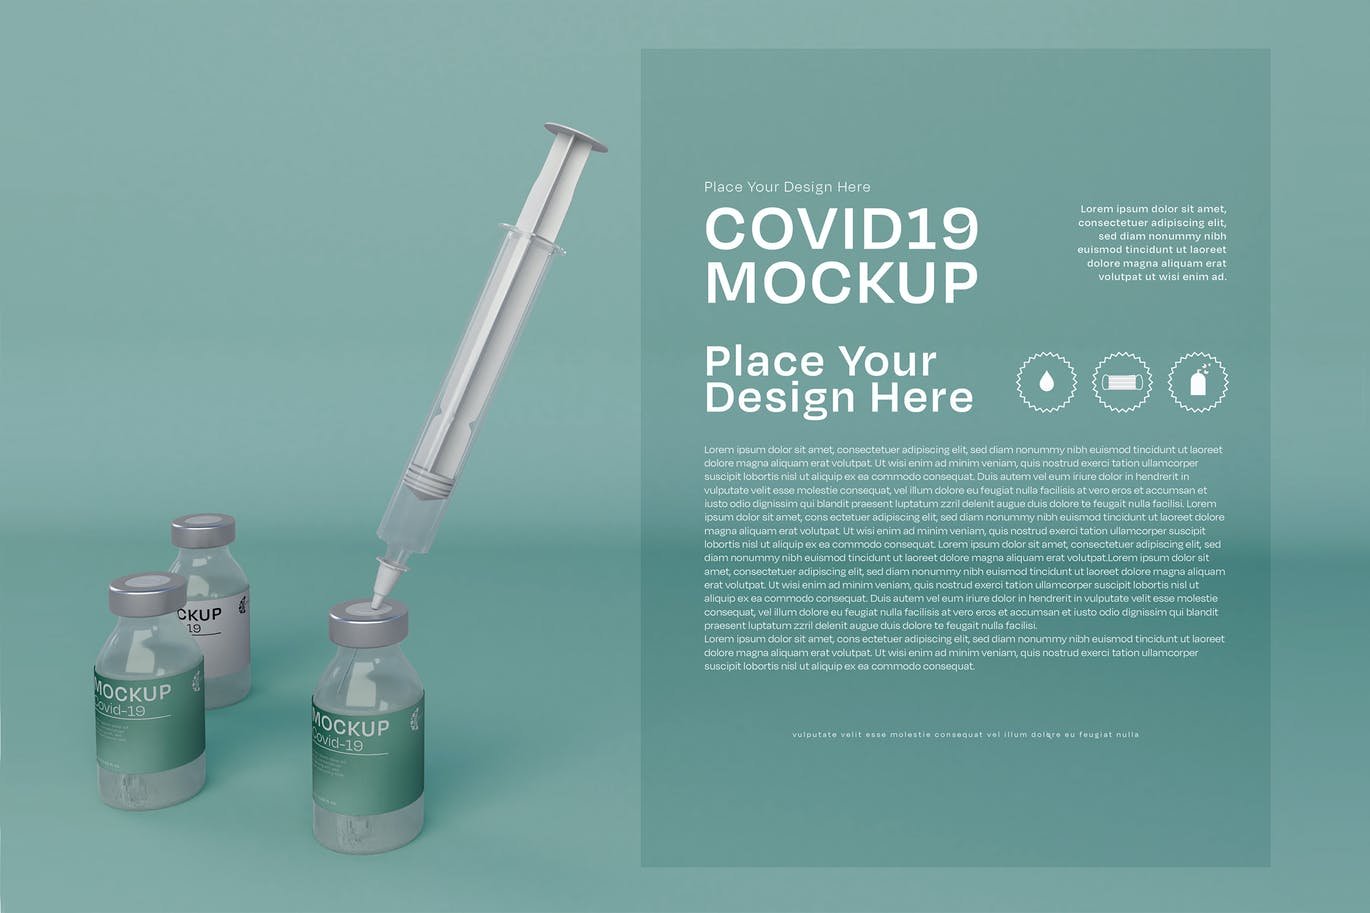 Covid-19 Design Mockup